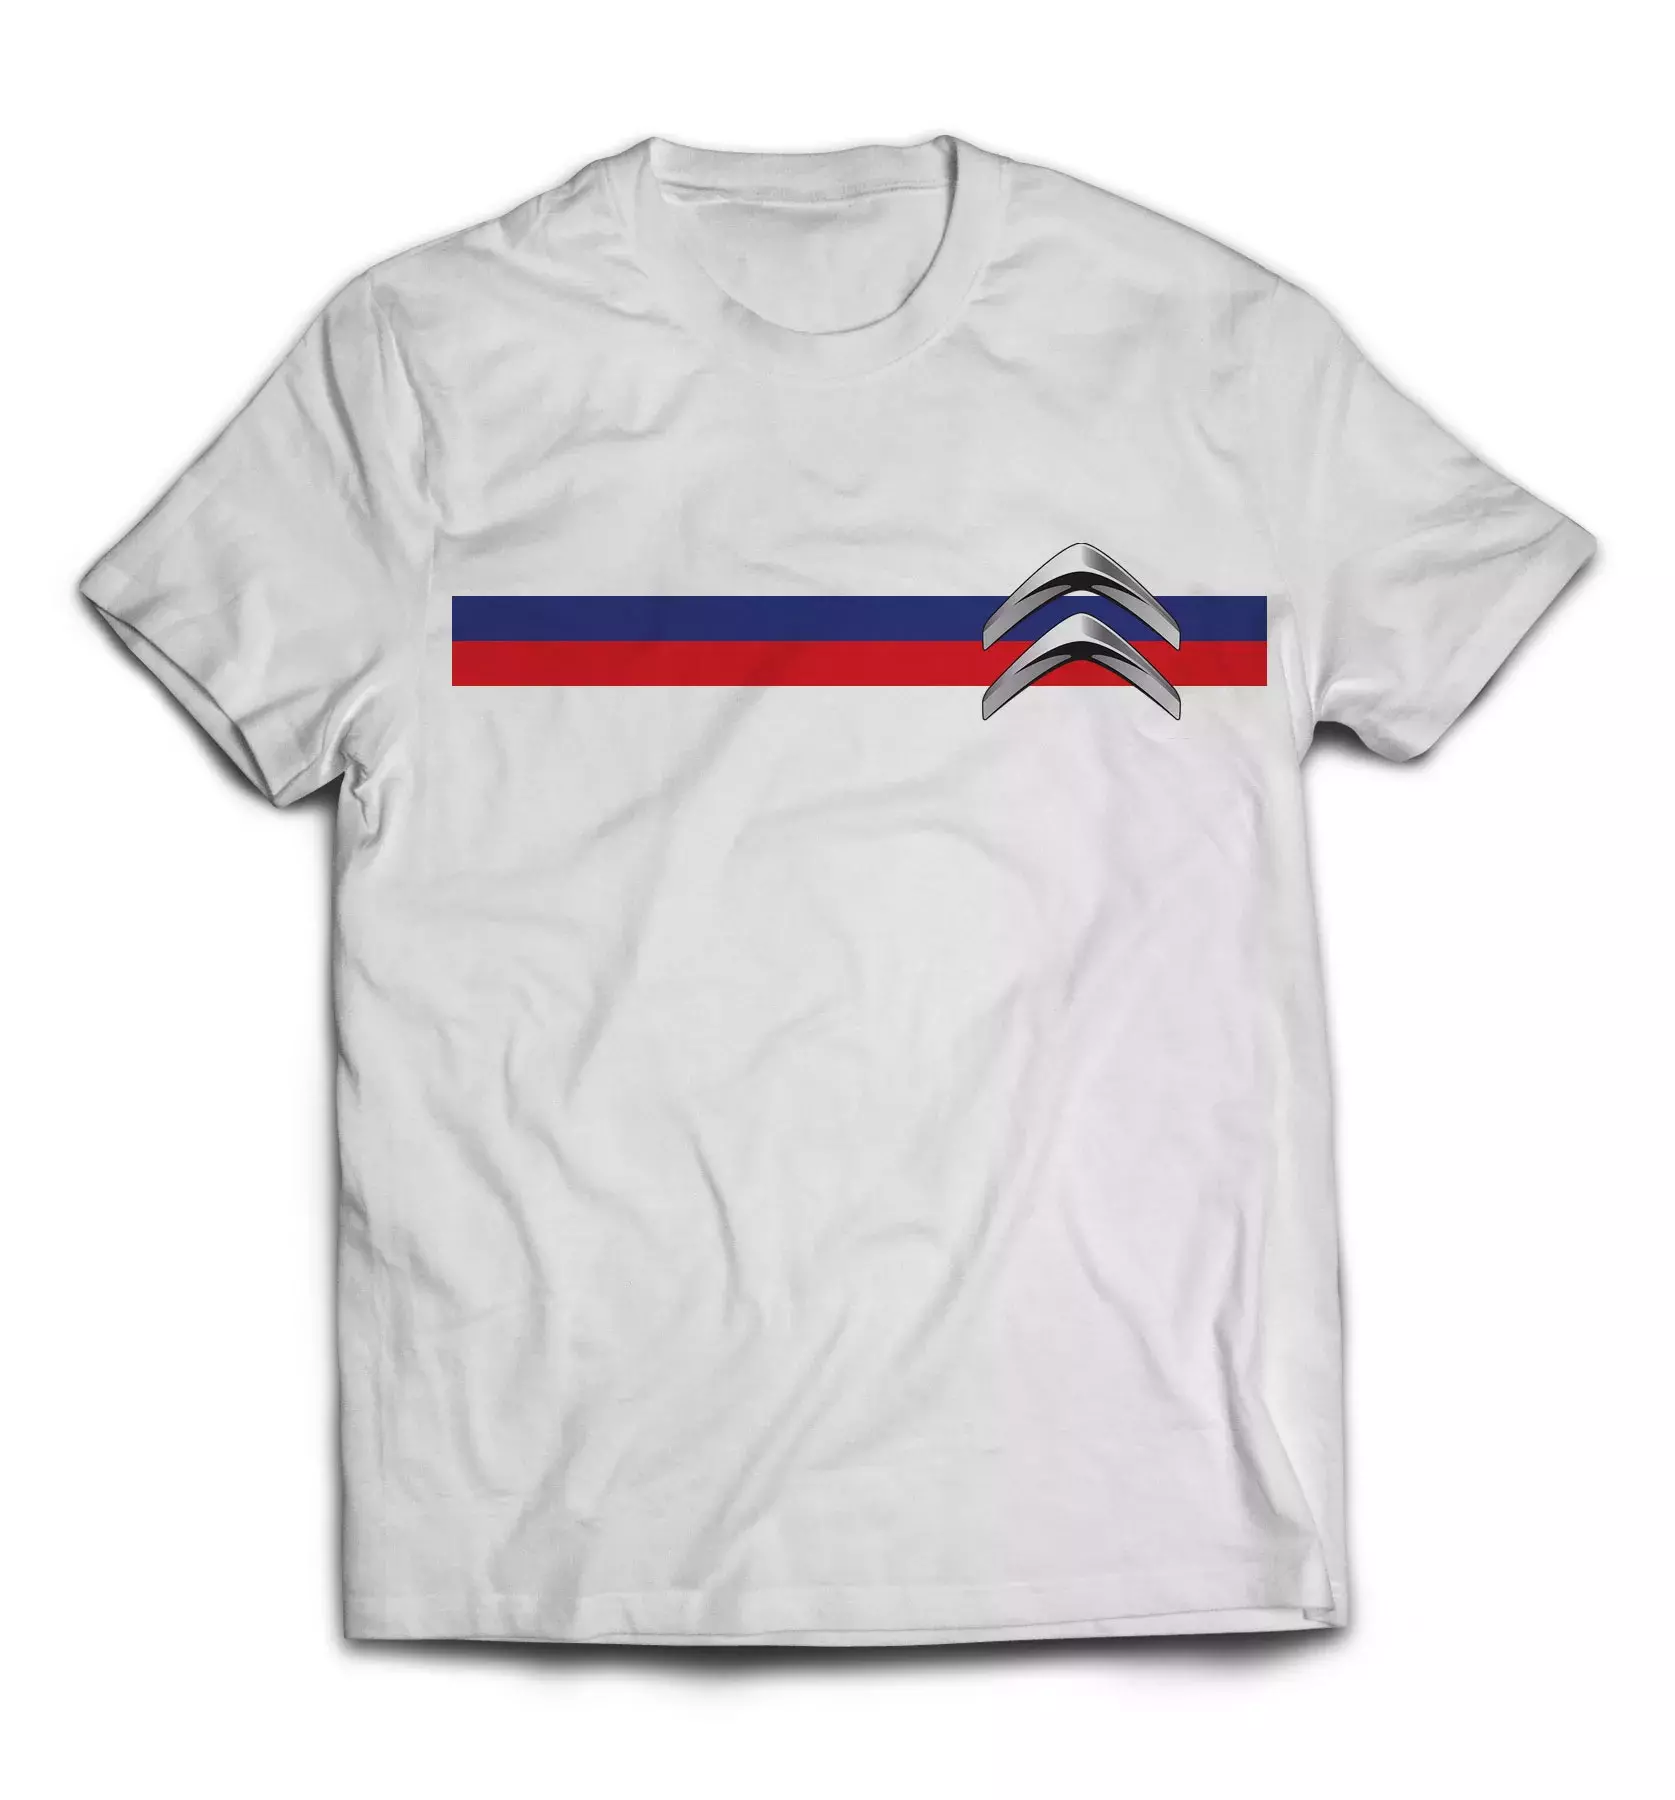 Белая футболка - Citroen дизайн